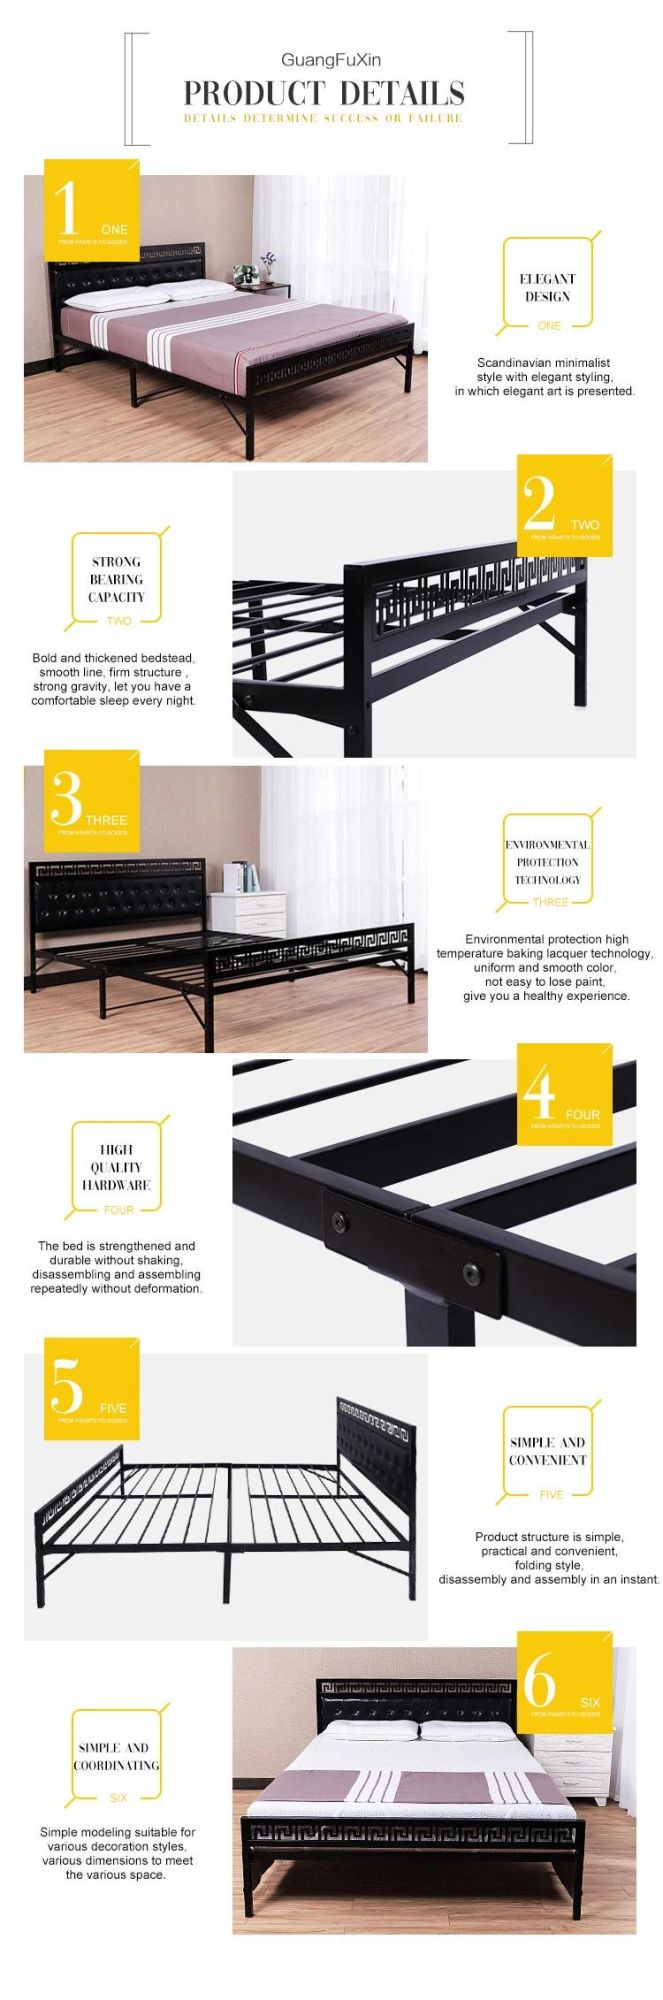 Latest Designs Furniture Bedroom Metal Bed Frame